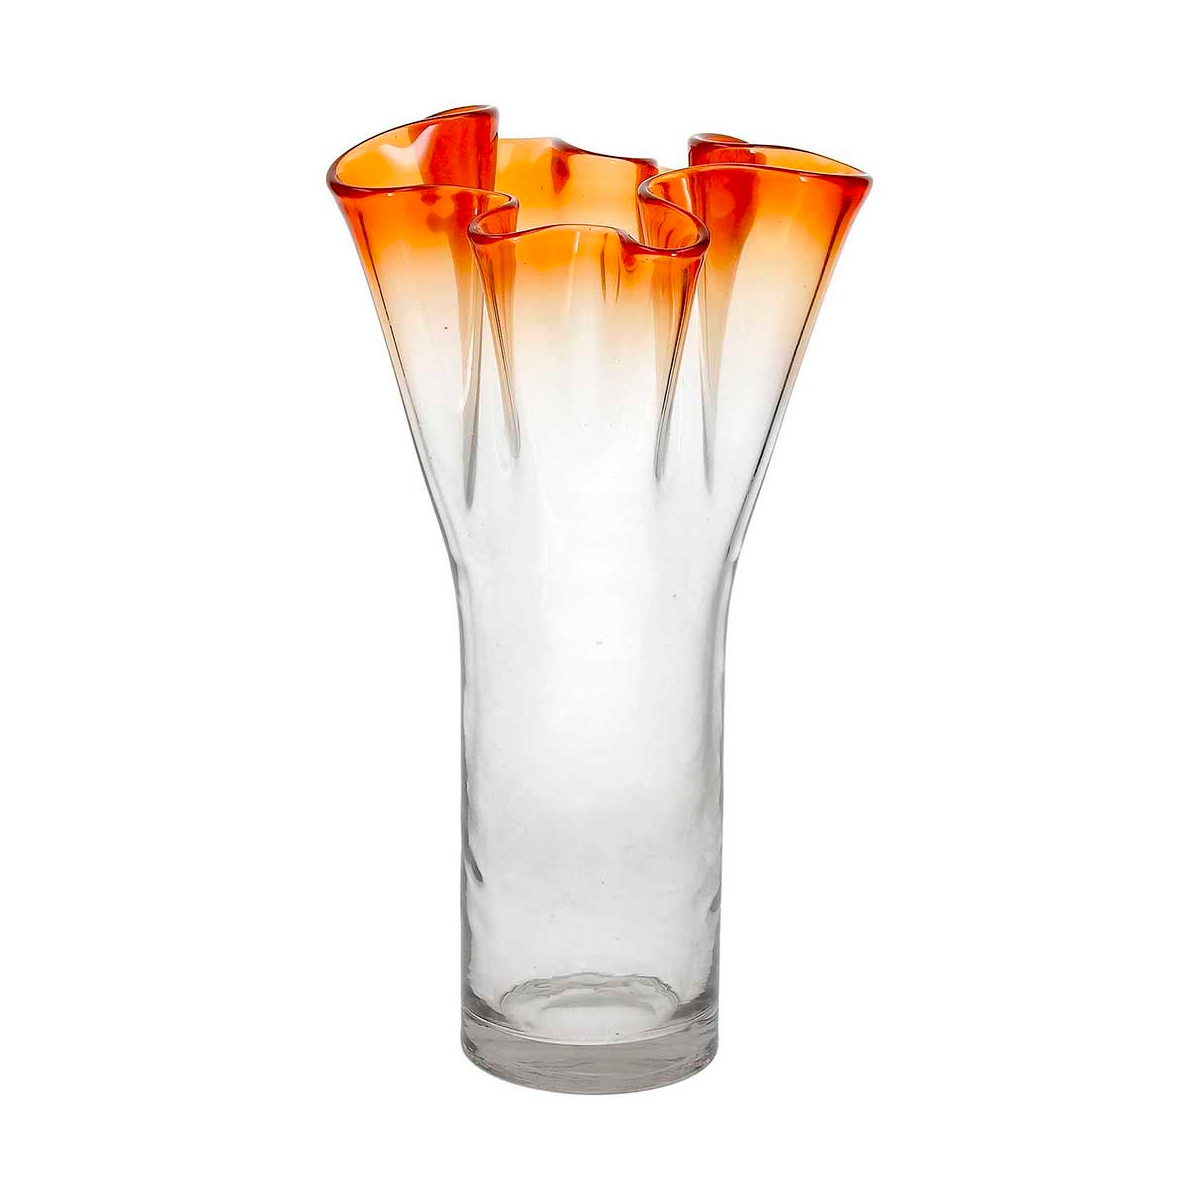 Ваза Andrea Fontebasso Glass Design Bizarre 32см, цвет оранжевый часы песочные andrea fontebasso glass design time 20см желтый